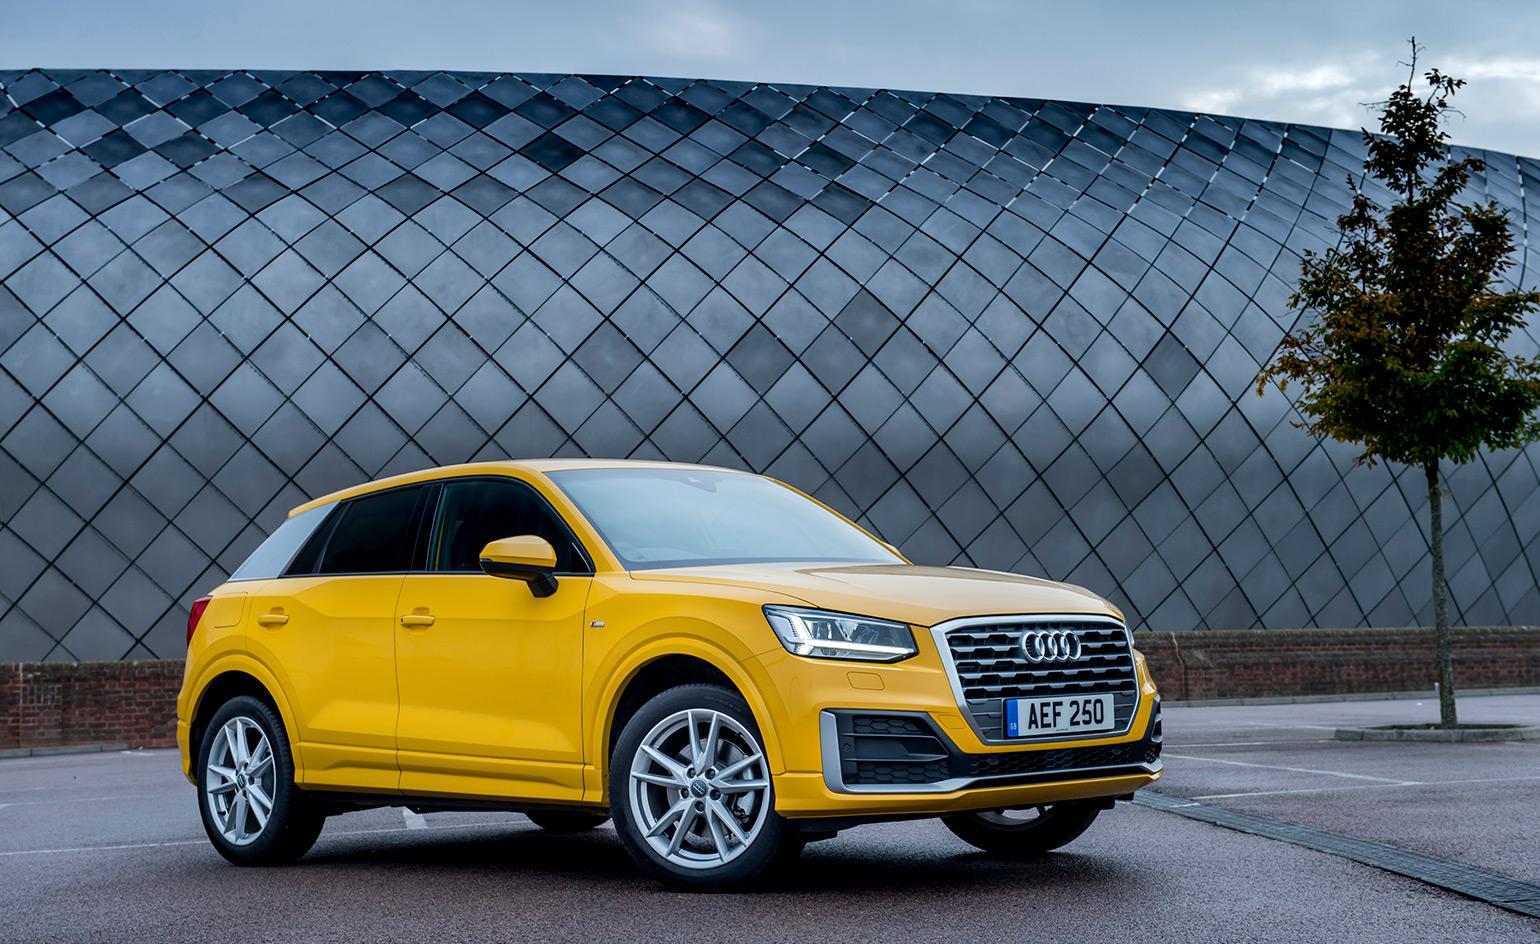 Audi presents the Q a new compact SUV. Wallpaper*